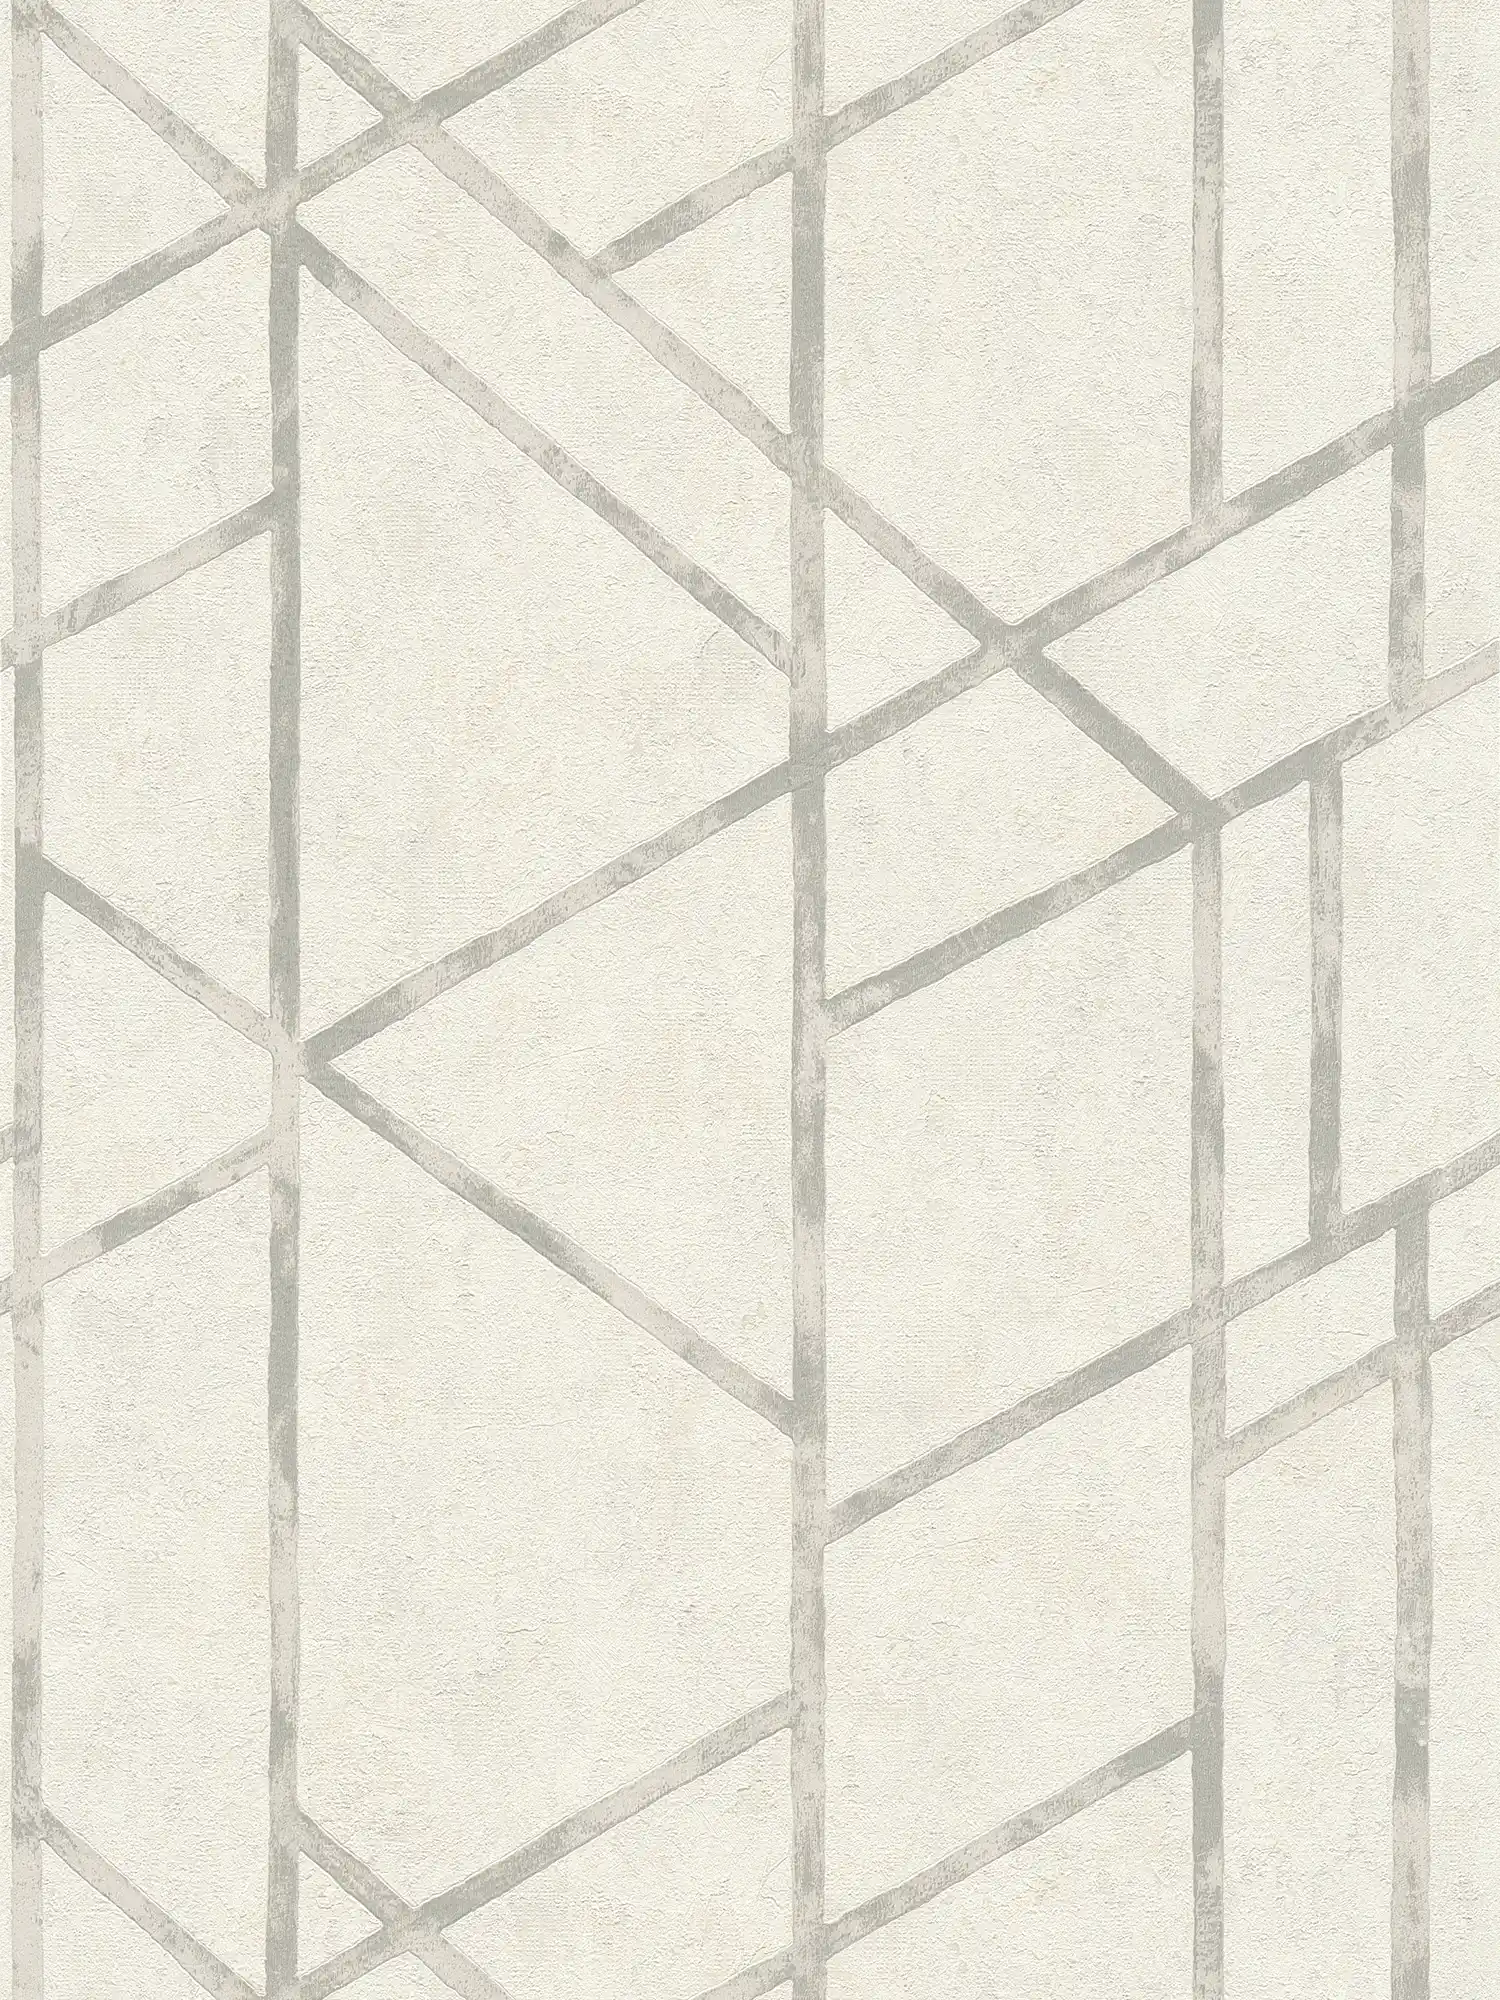 Carta da parati in cemento con motivo grafico argentato - argento, bianco
